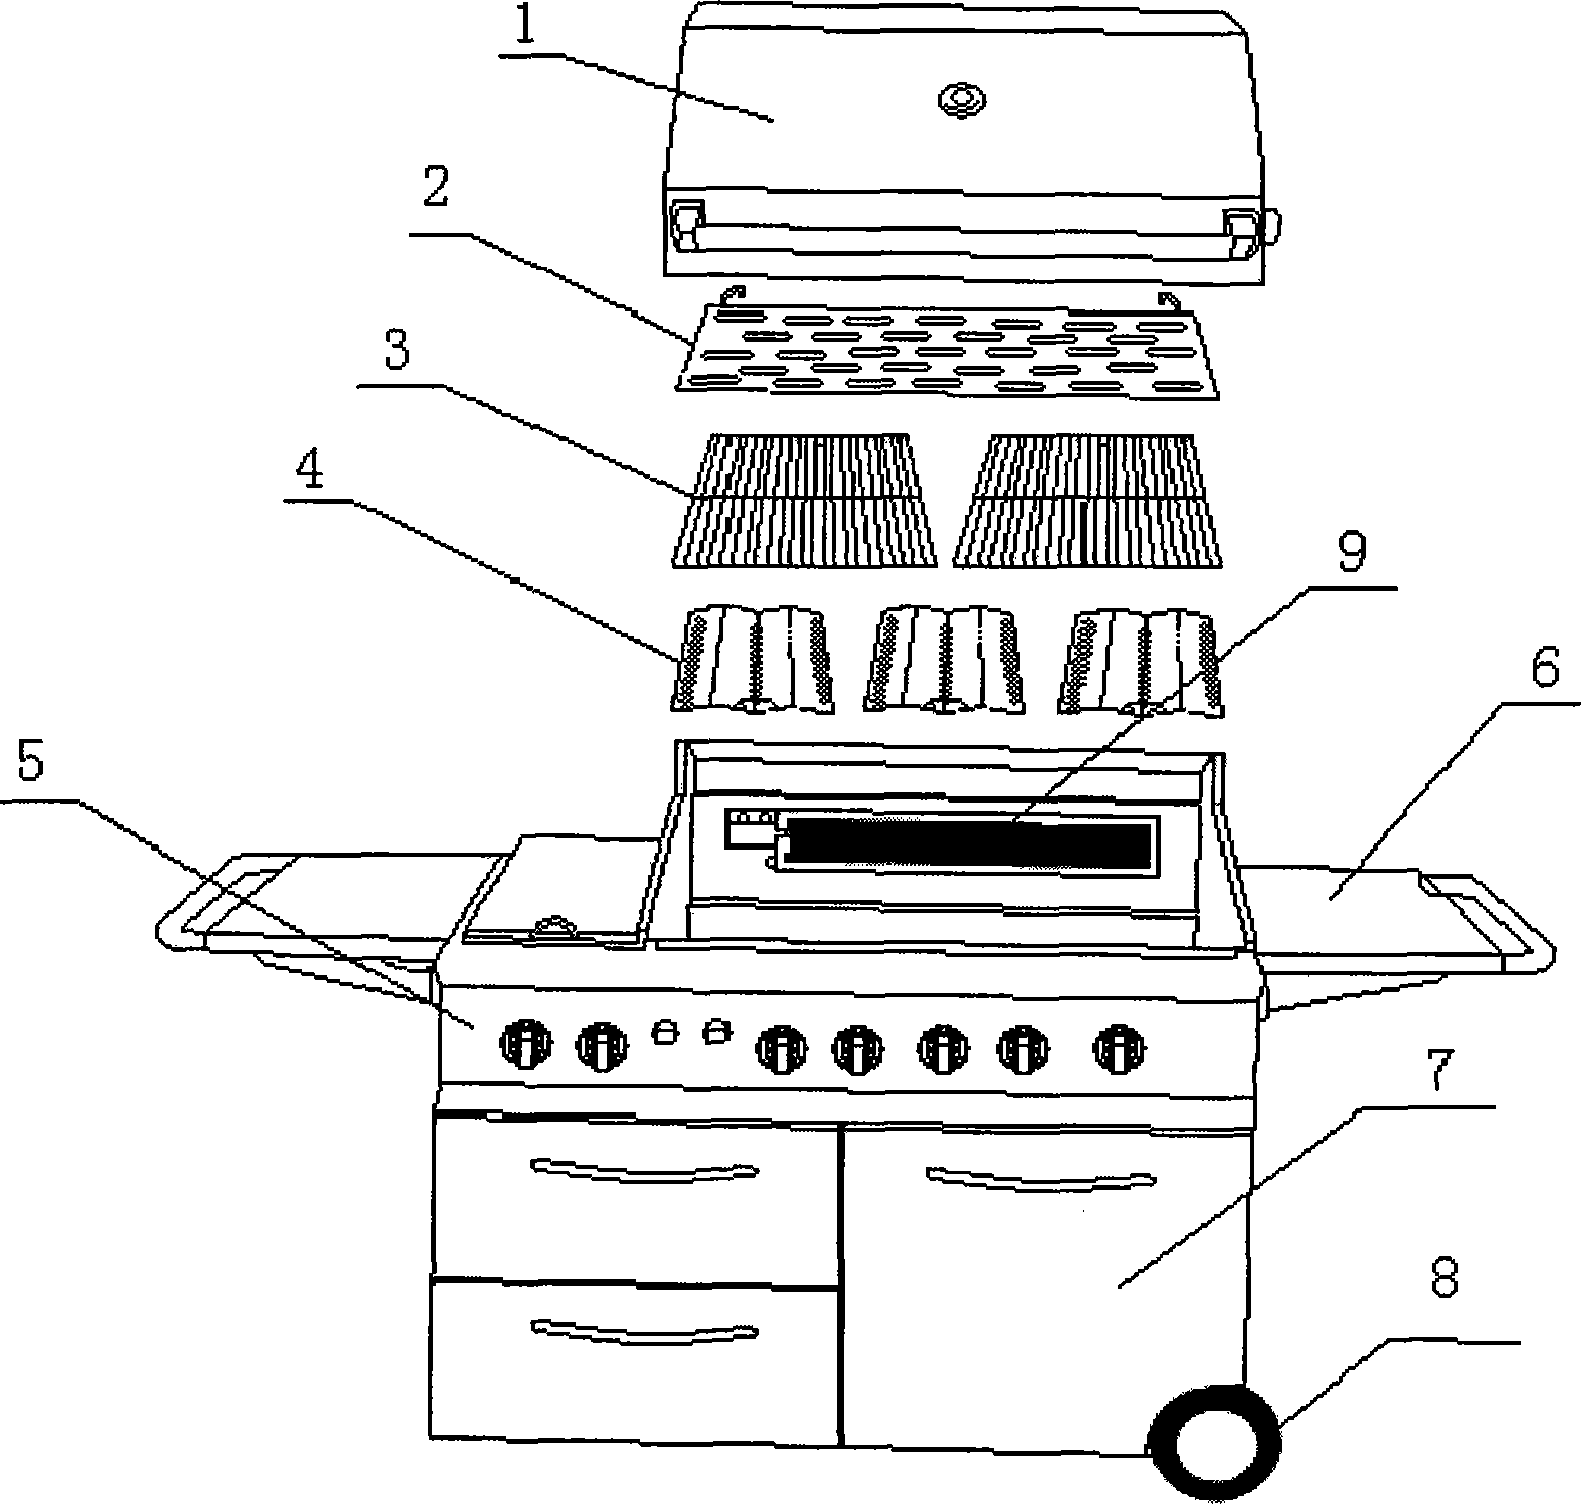 Novel gas-fired roasting oven